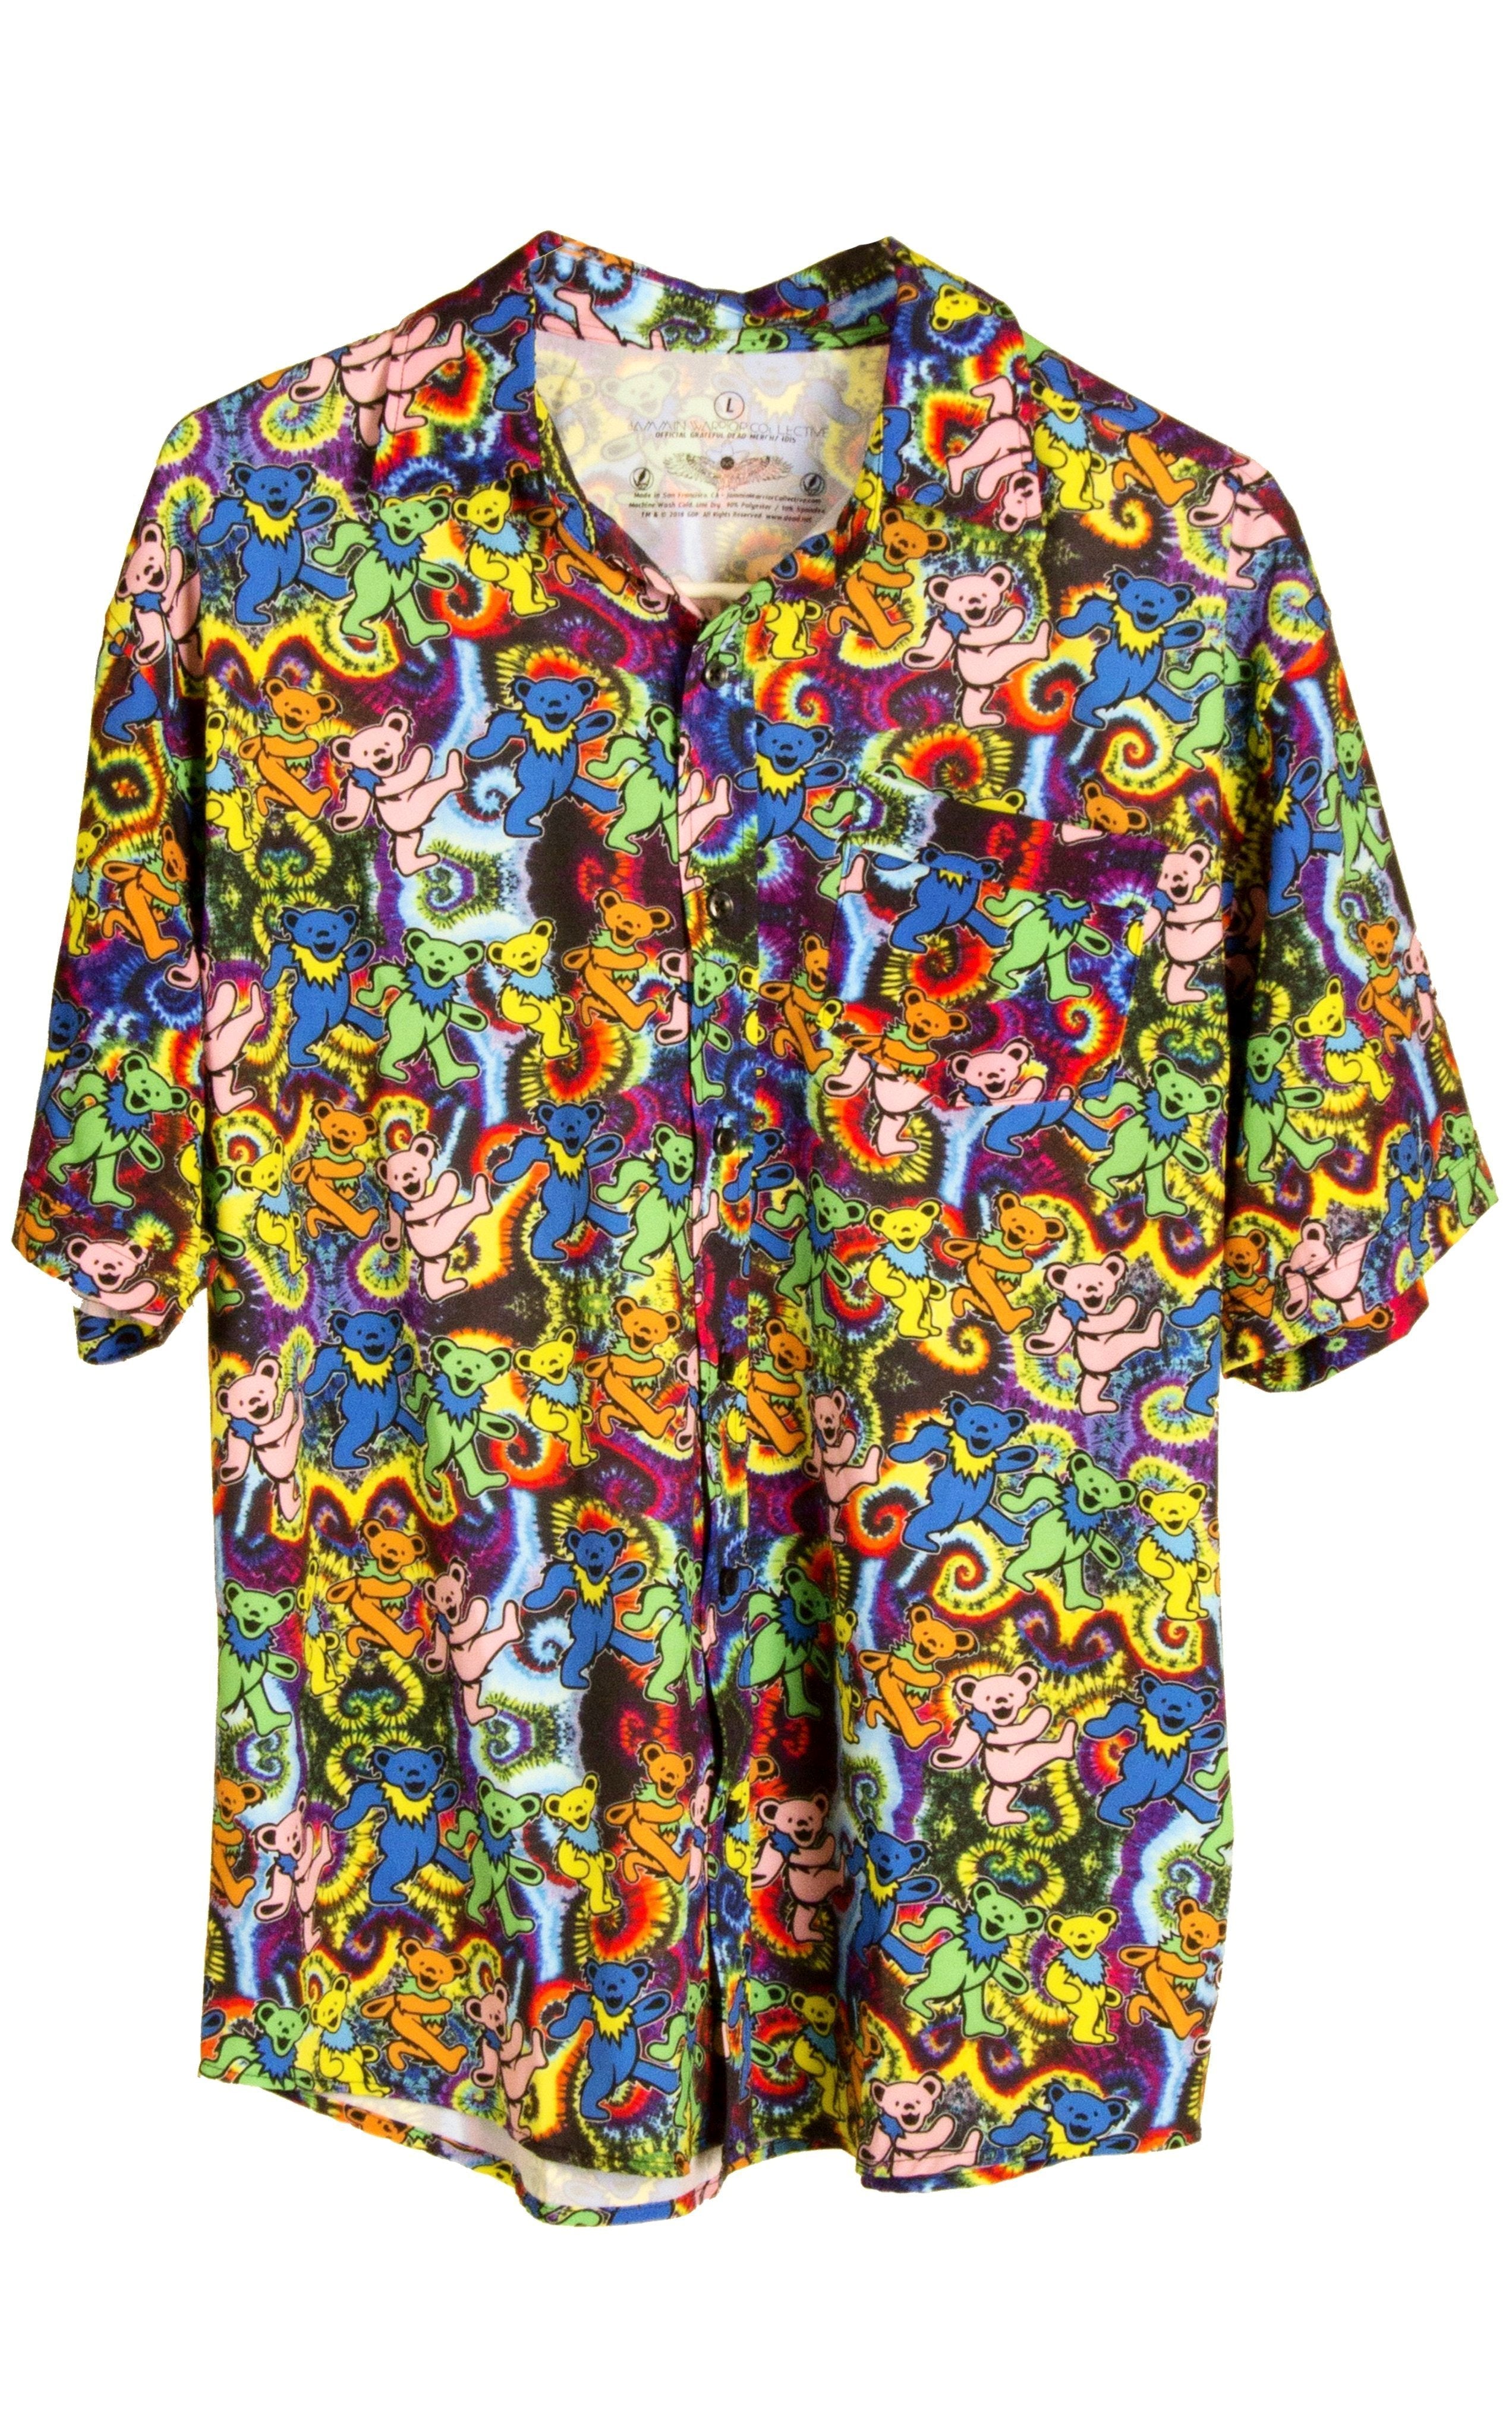 Dancing Bears Grateful Dead Dress Shirt - Warrior Within Designs ,Shirt 